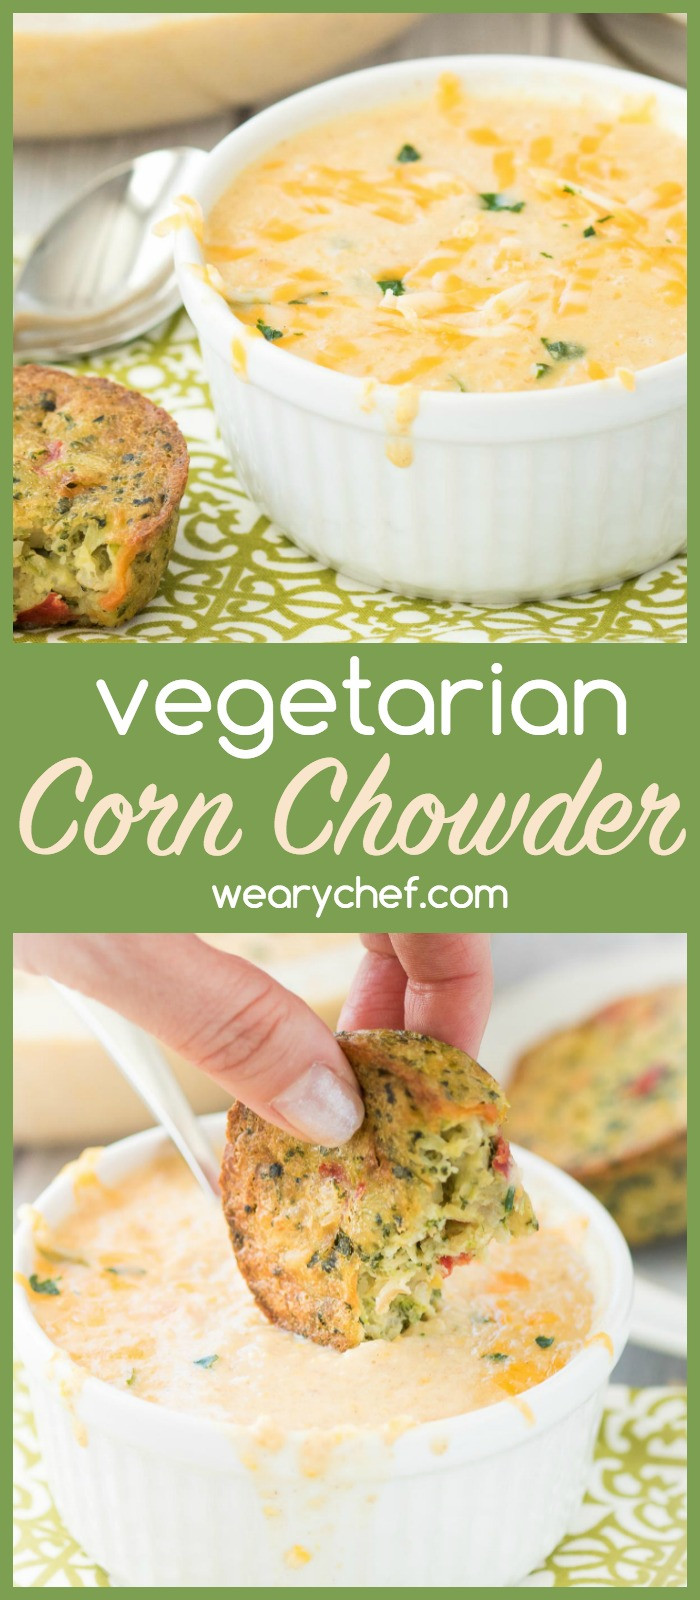 Vegetarian Corn Chowder Recipes
 Ve arian Corn Chowder Recipe The Weary Chef